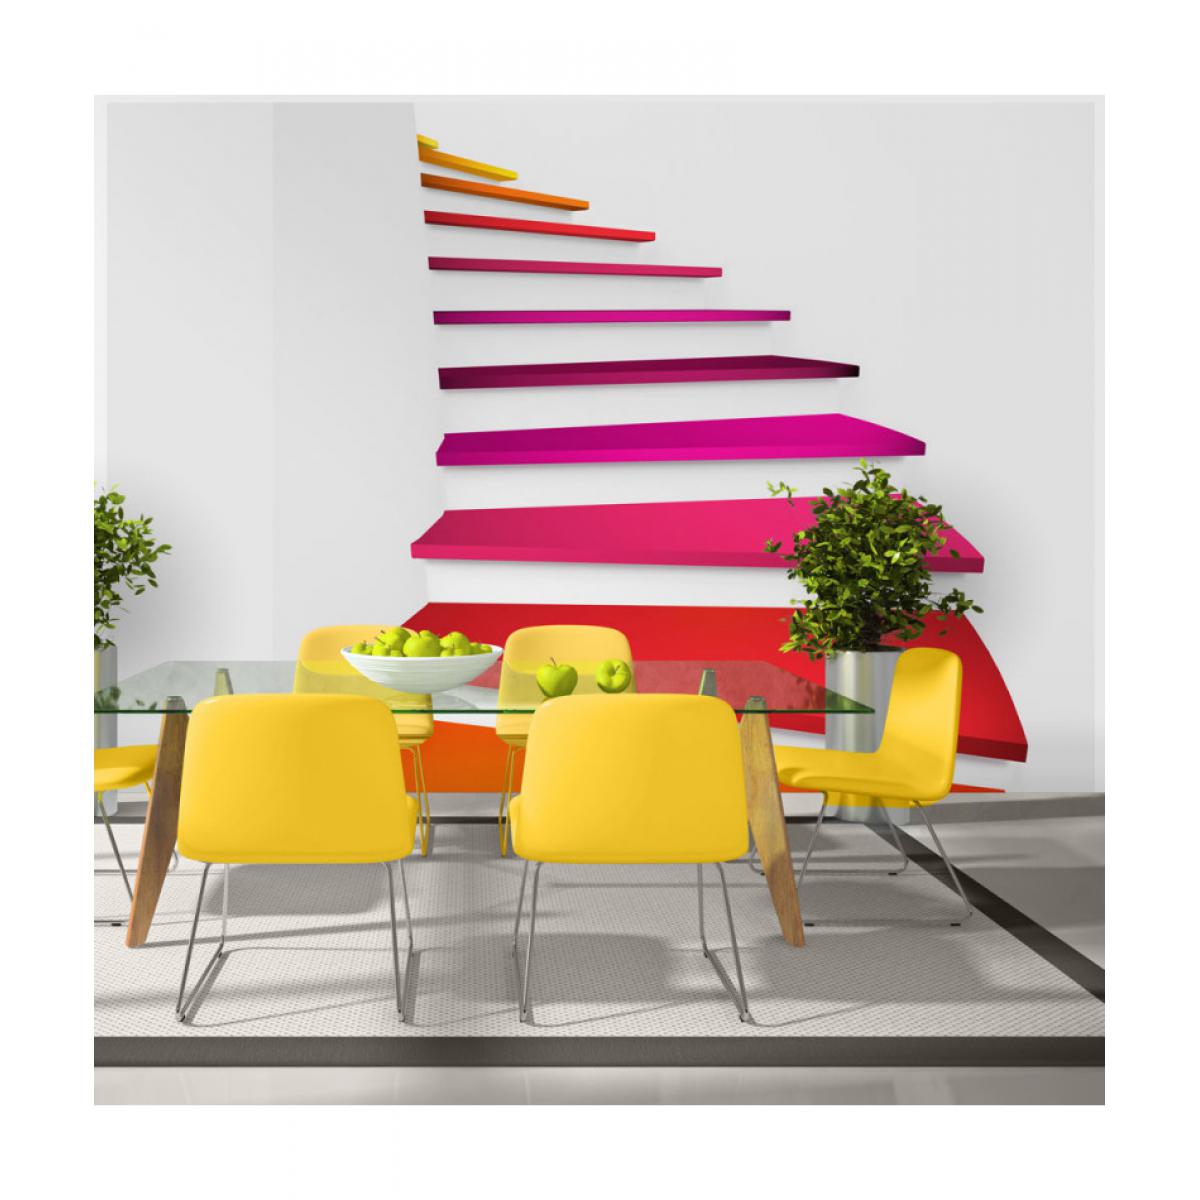 Artgeist - Papier peint - Colorful stairs 100x70 - Papier peint